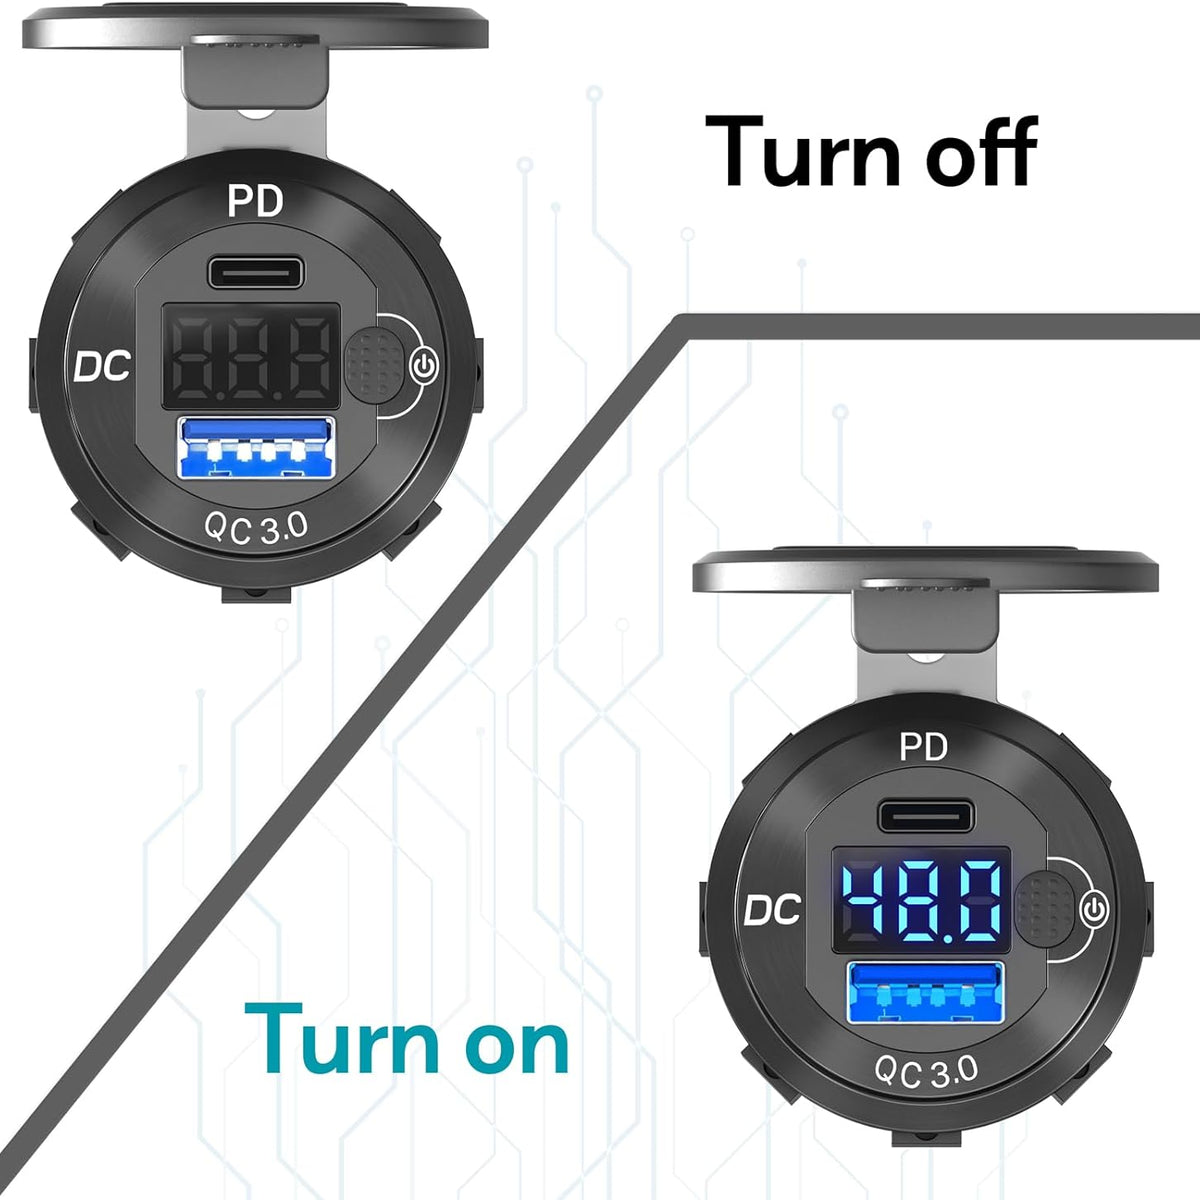 डीसी-डायरेक्ट यूएसबी पीडी 3.1 ईपीआर (विस्तारित पावर रेंज) 48 वी 240W चार्जर (विकास के तहत)